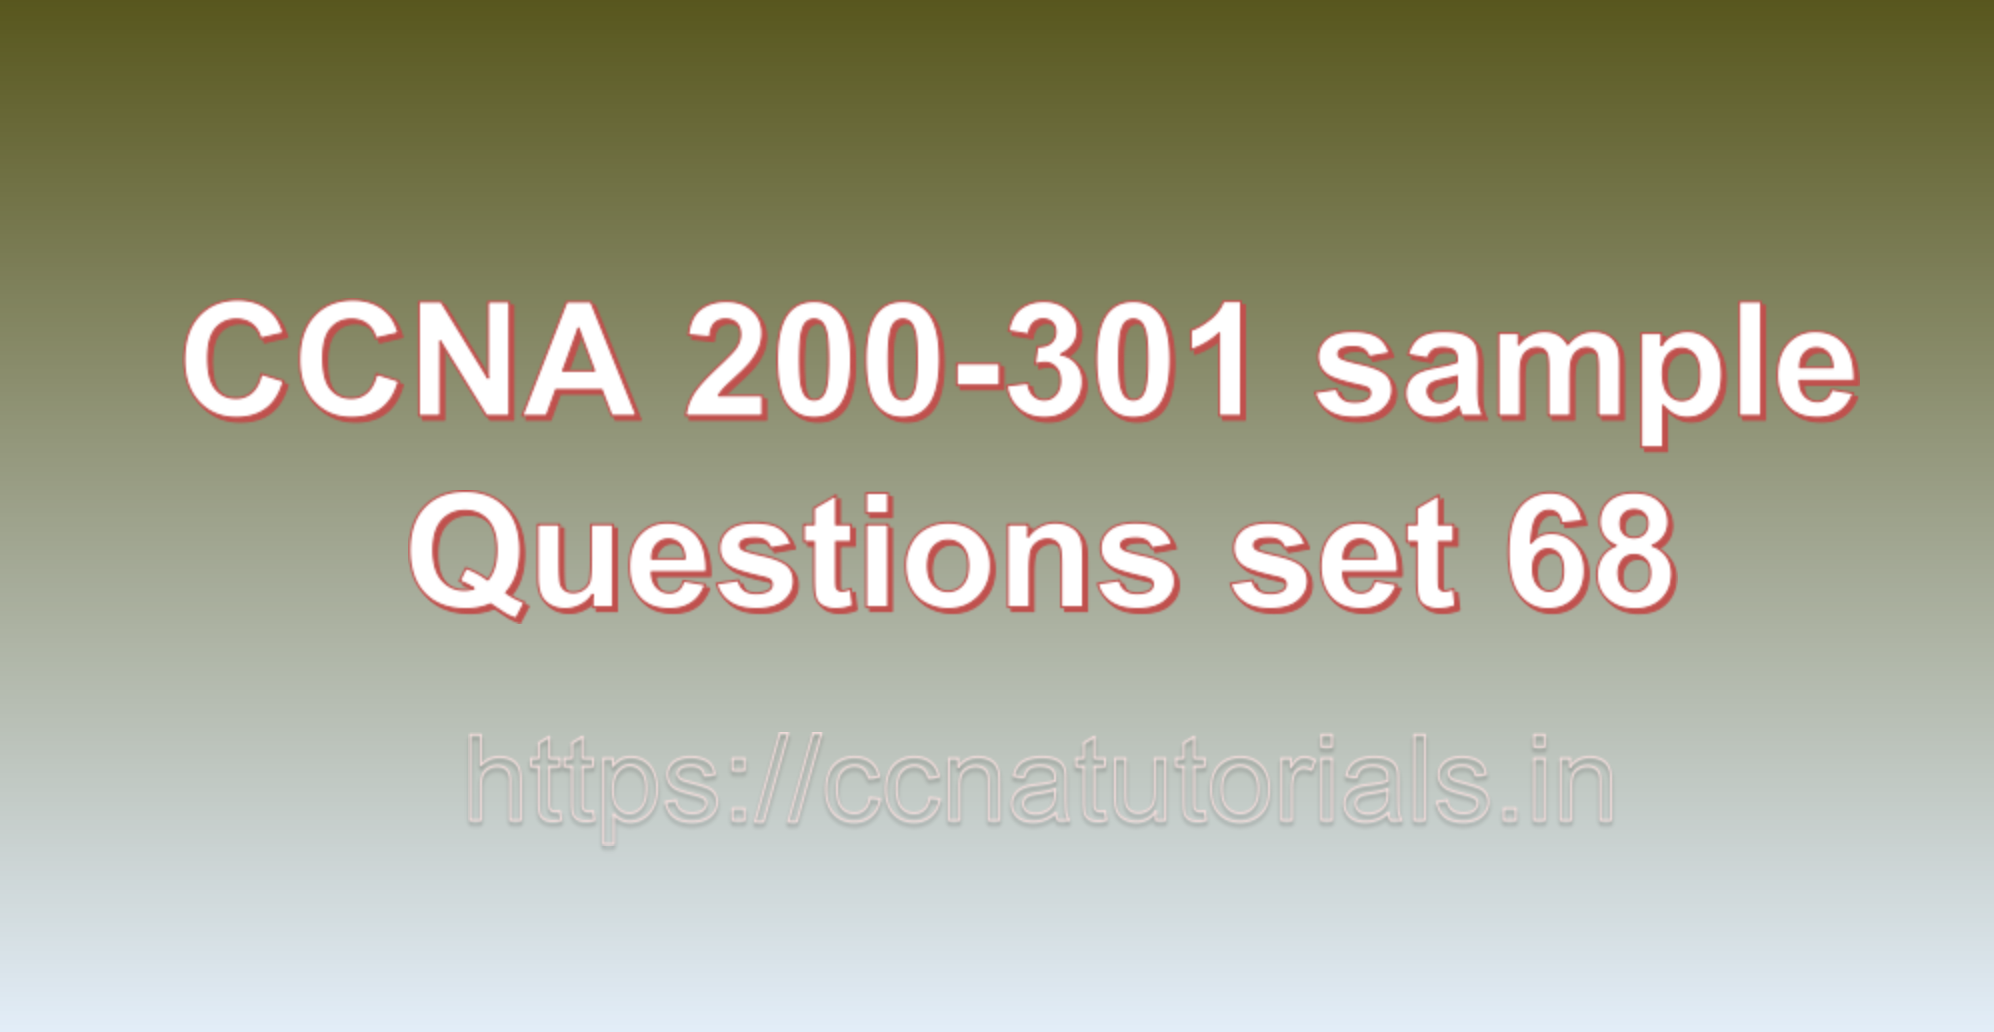 ccna sample questions set 68, ccna tutorials, CCNA Exam, ccna